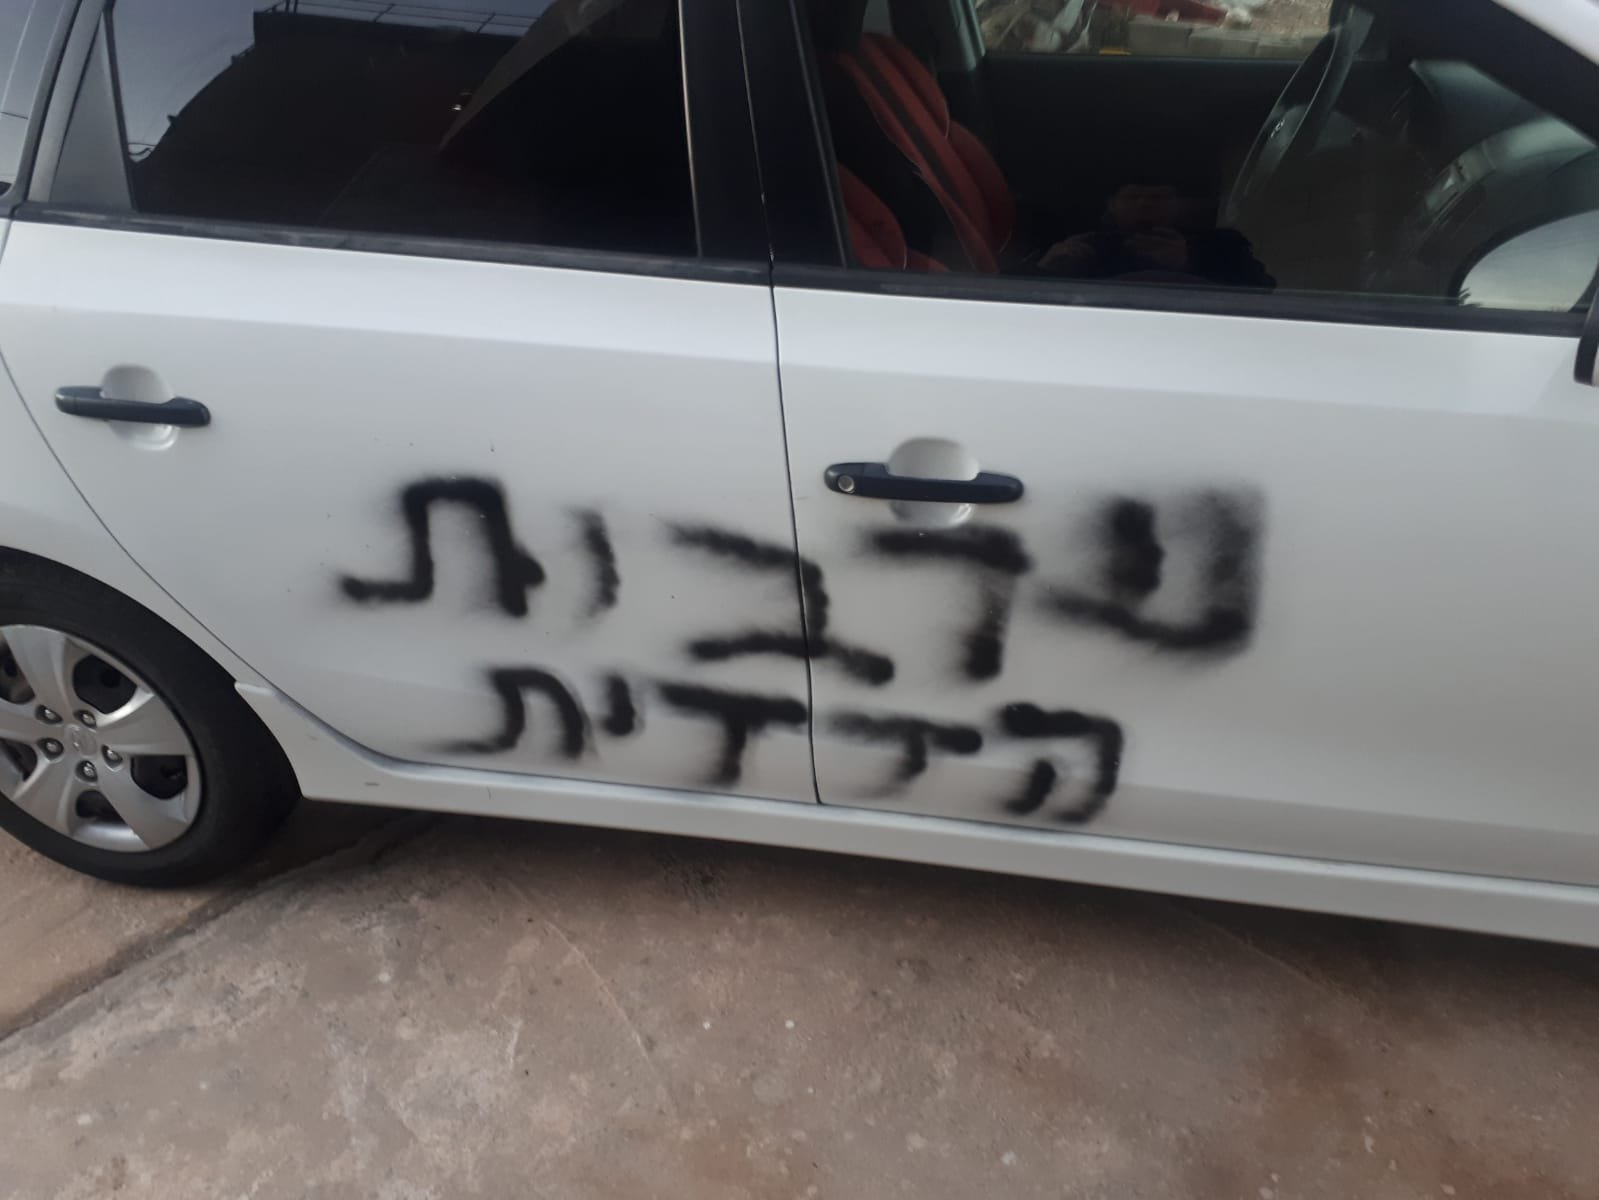 يافة الناصرة: عبارات عنصرية معادية للعرب .. وأضرار لمركبات -0